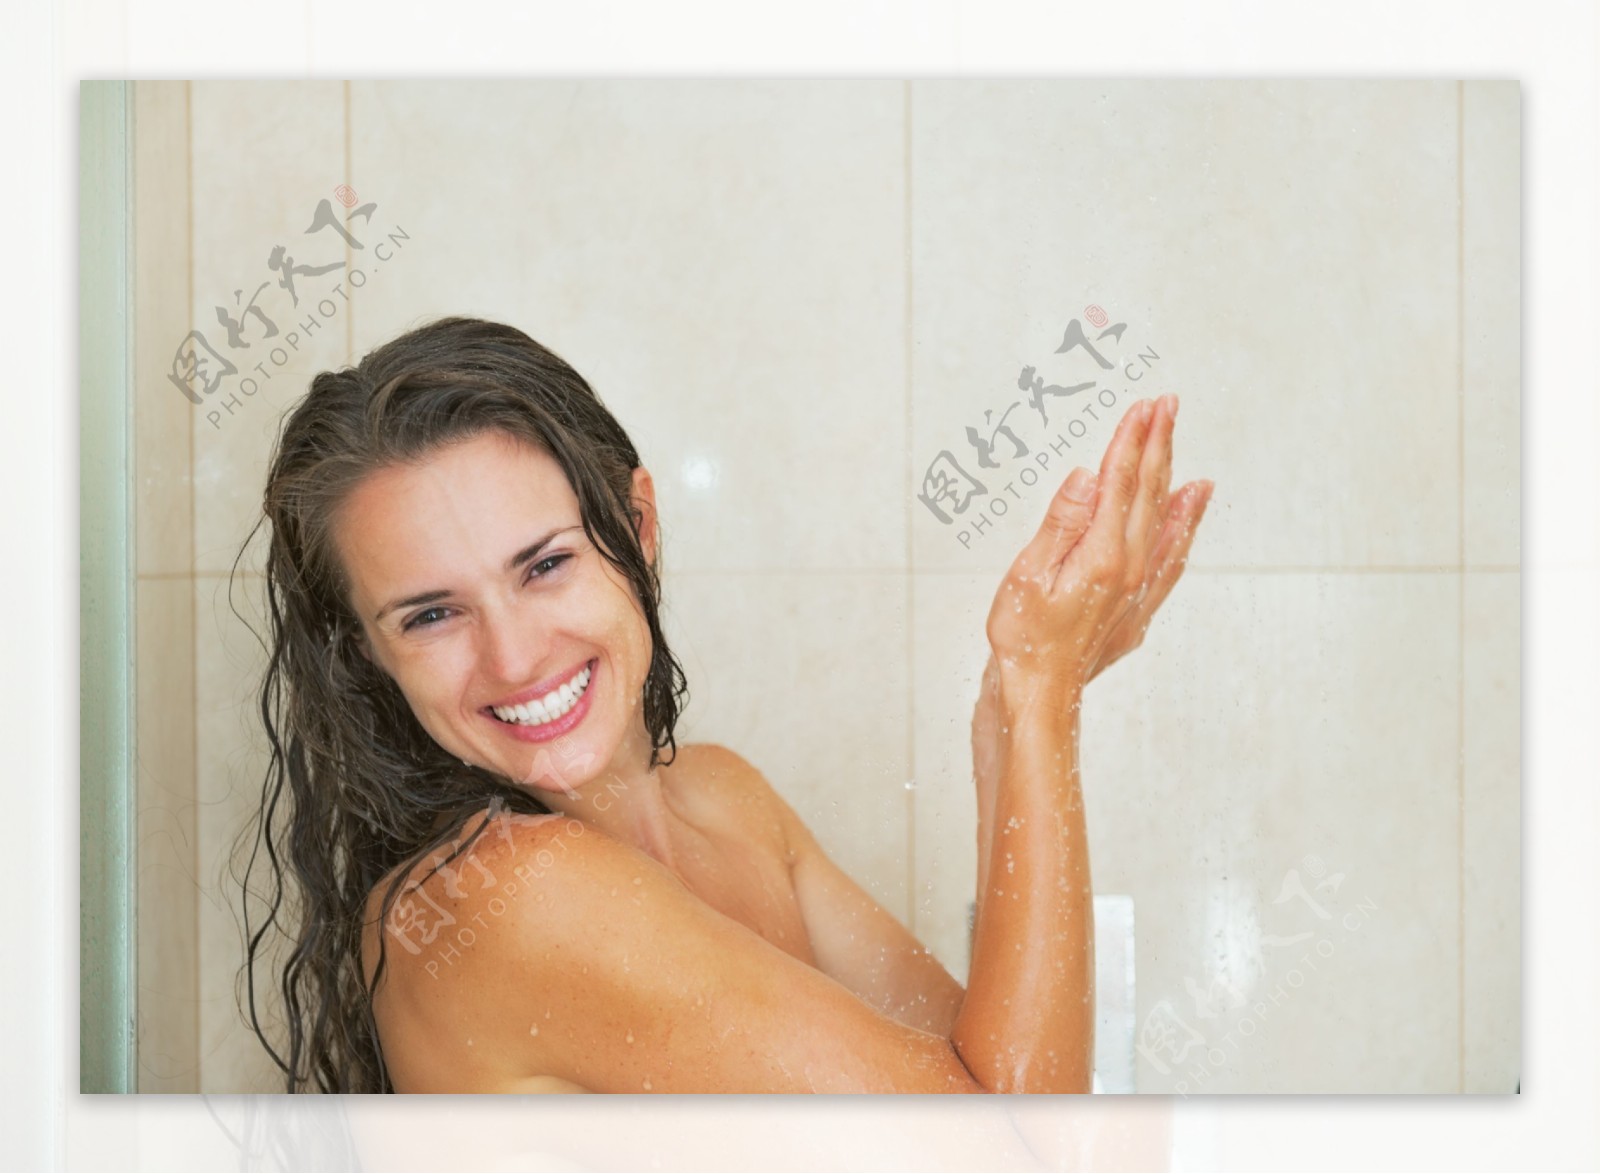 正在洗澡的女人图片